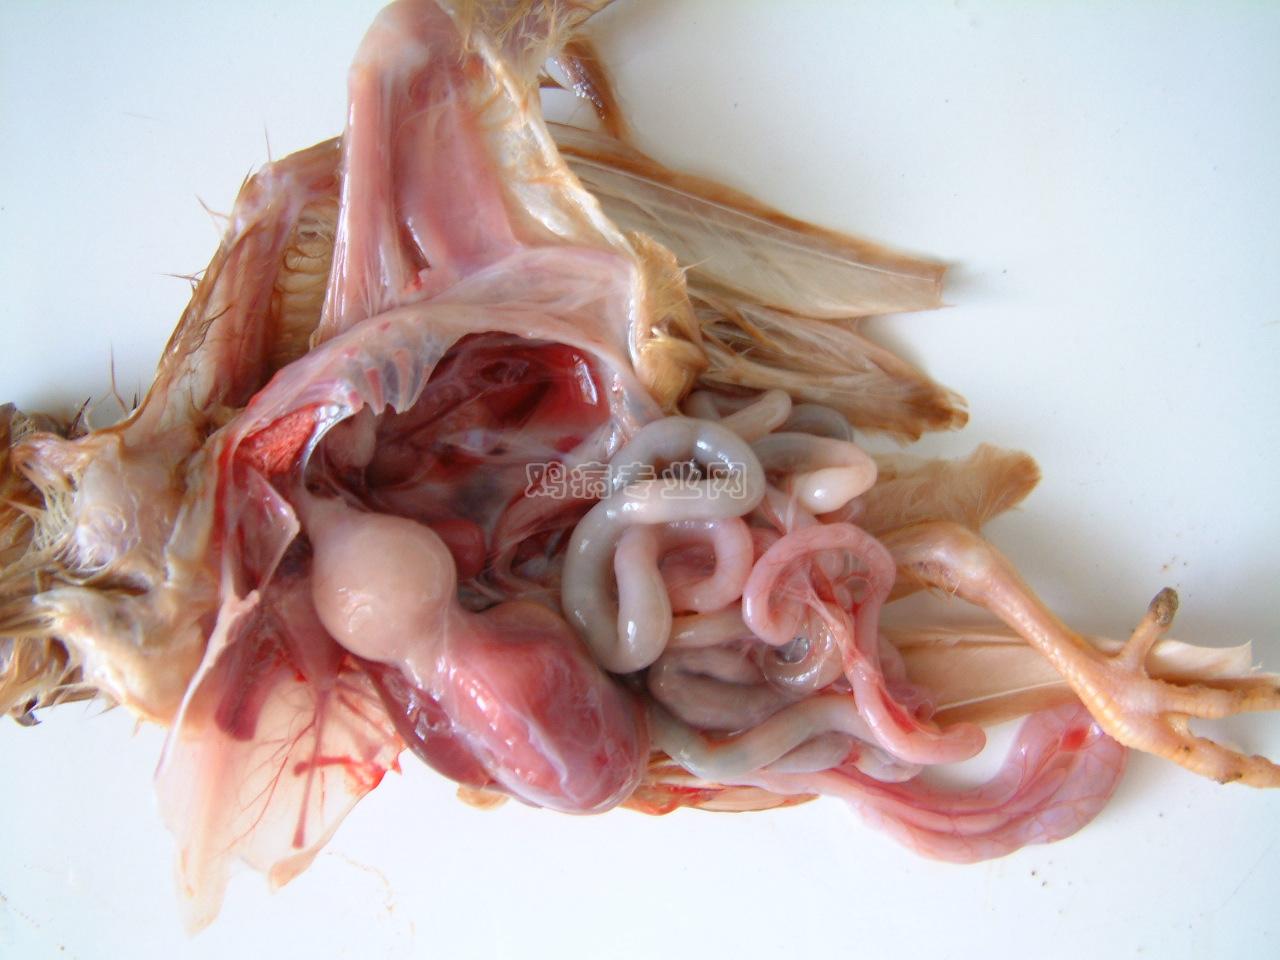 最近拍摄的几张腺胃炎照片 - 鸡病图片资料区 - 鸡病